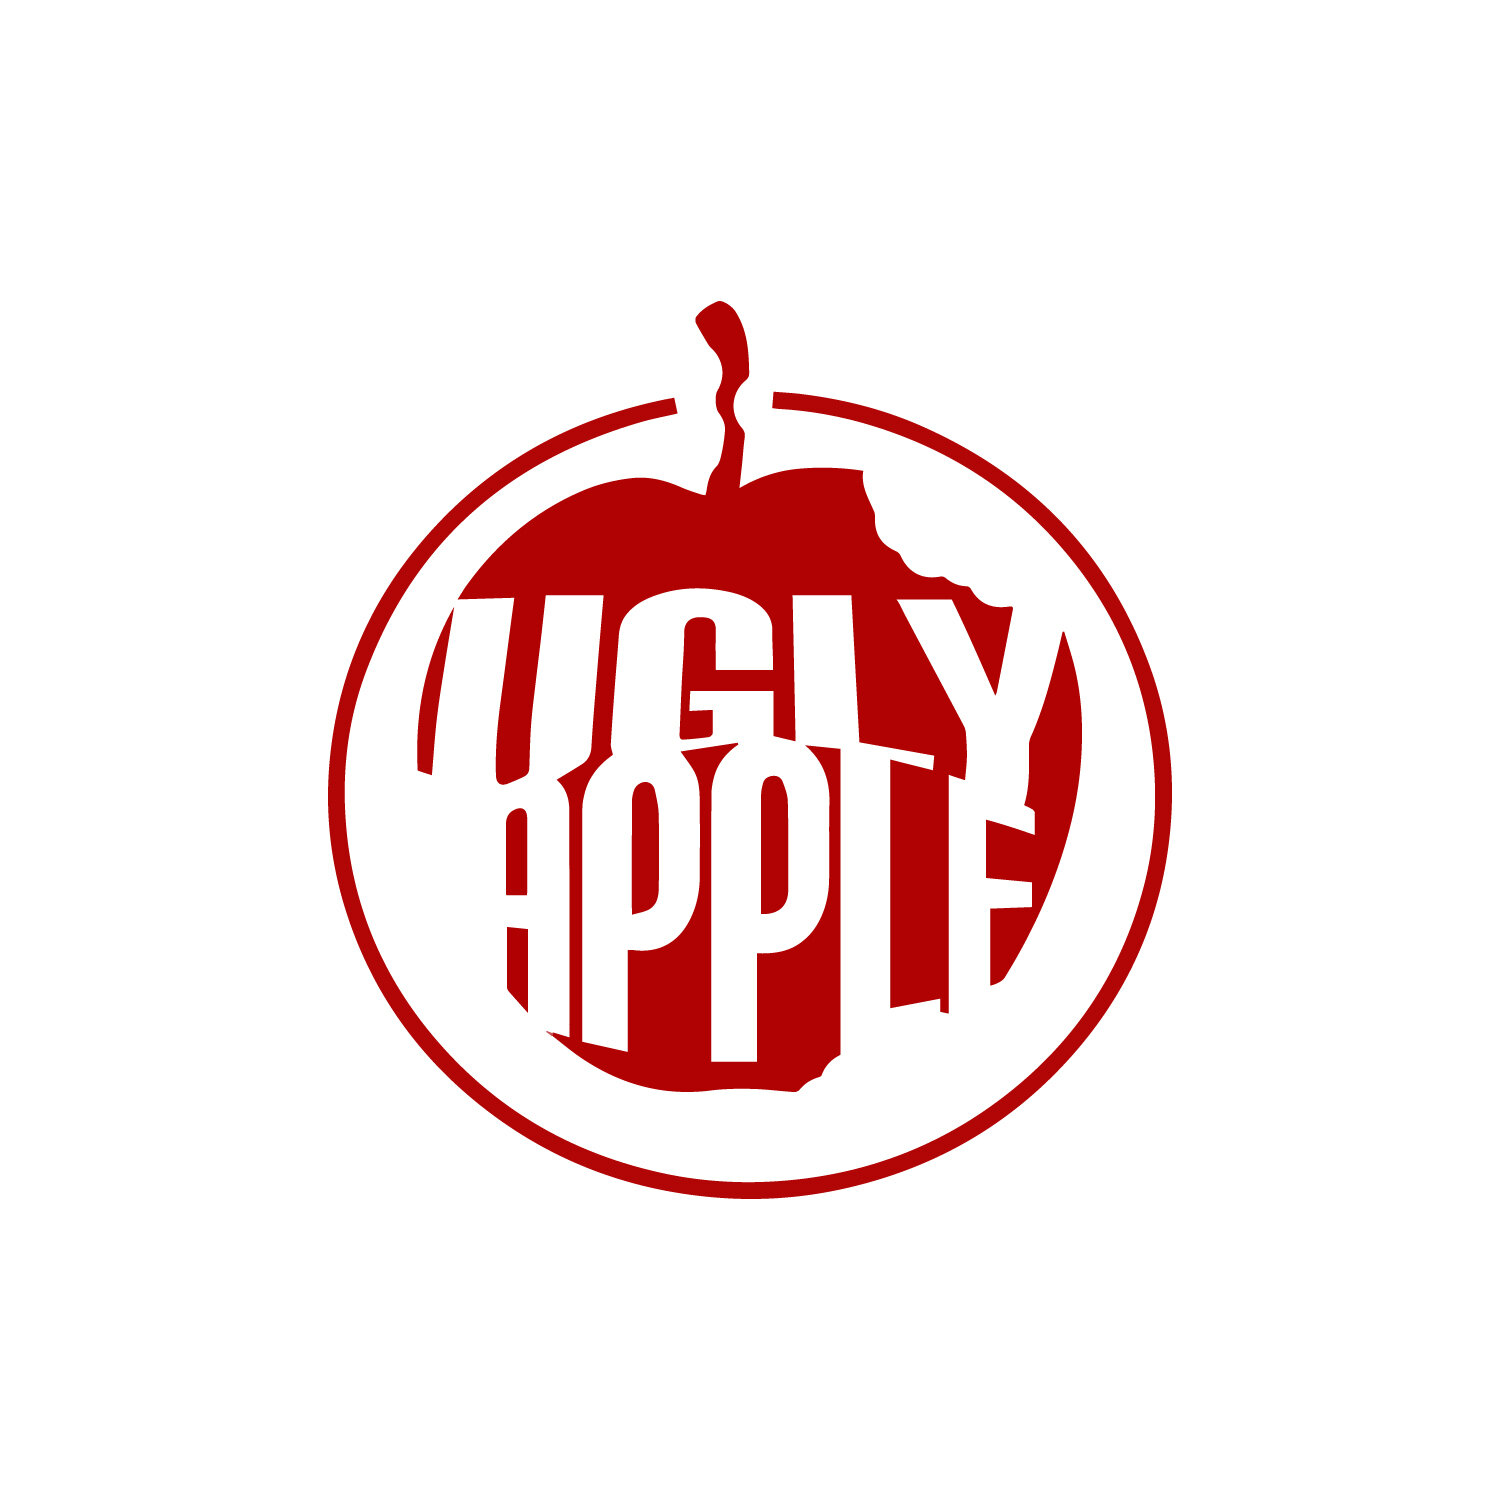 ugly apple logo.jpg